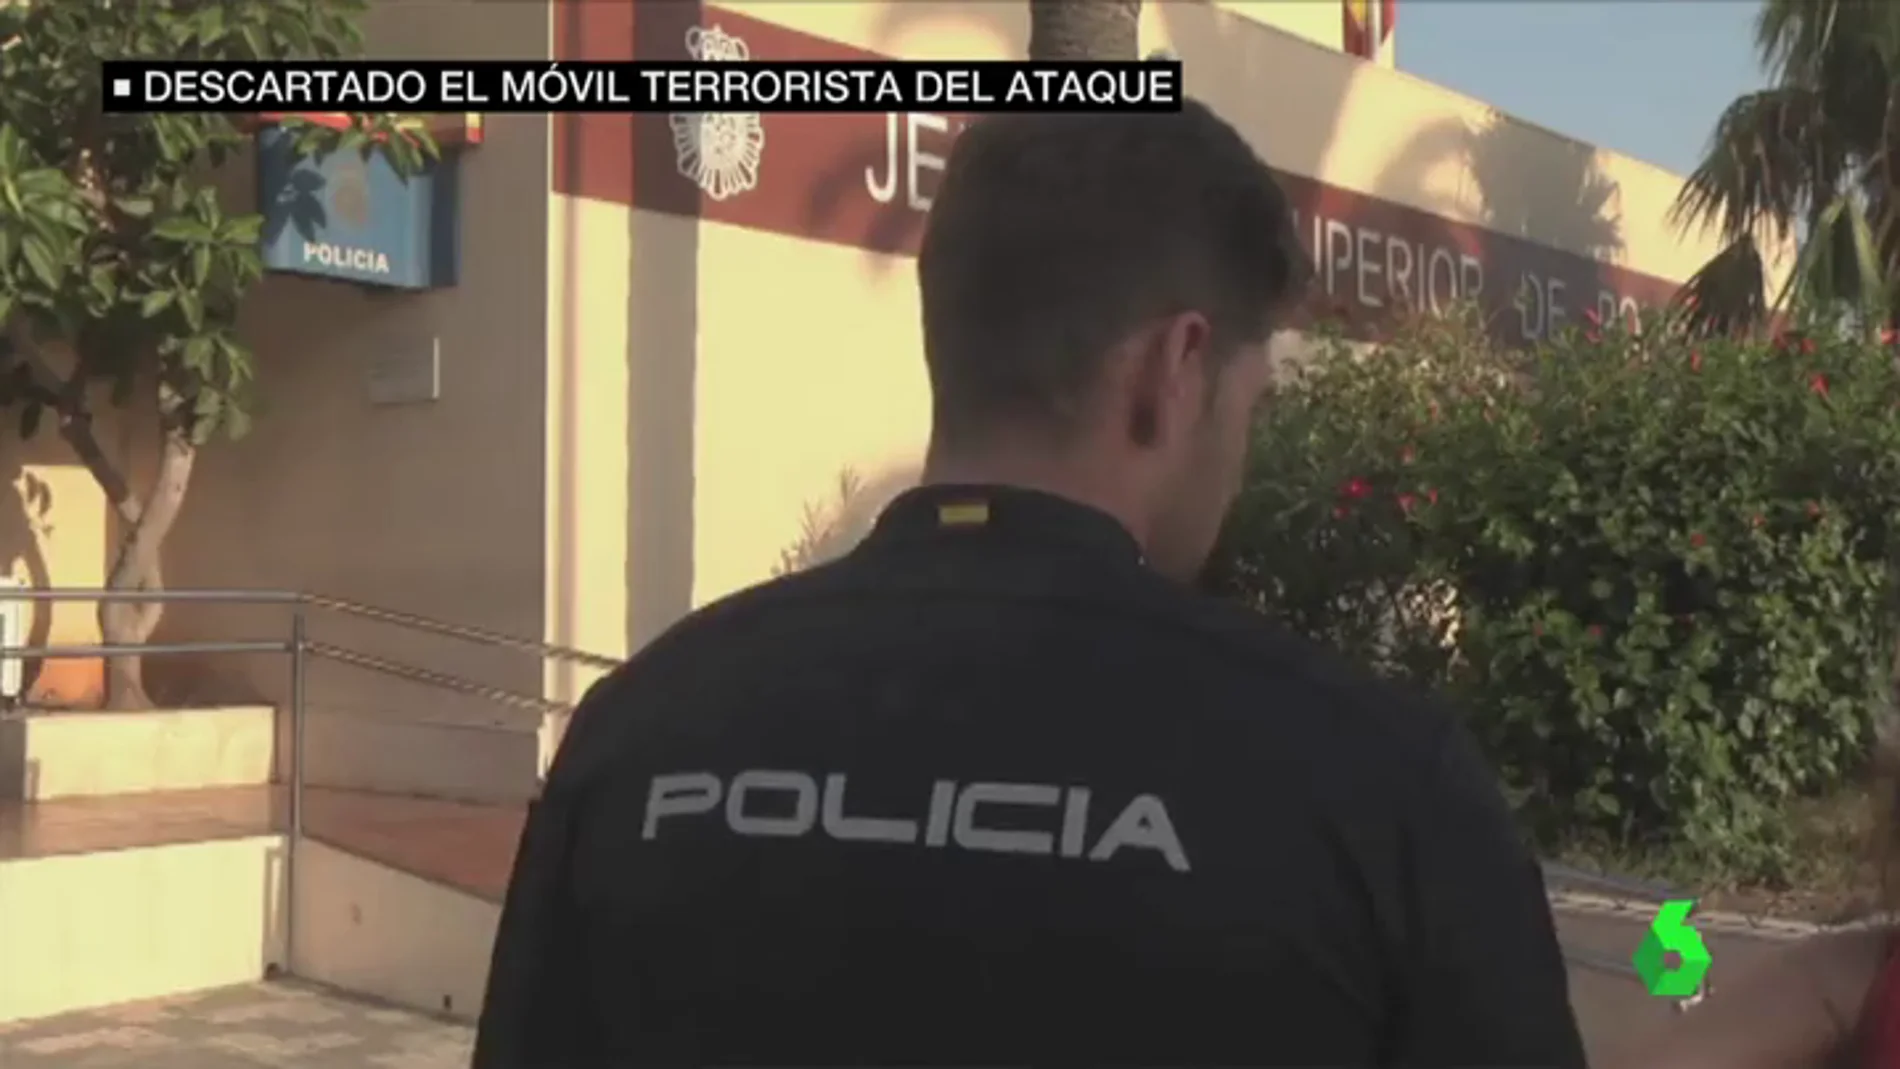  El policía que lanzó una valla a la cabeza del agresor de Melilla dice que hizo "lo más rápido y eficaz en ese momento"